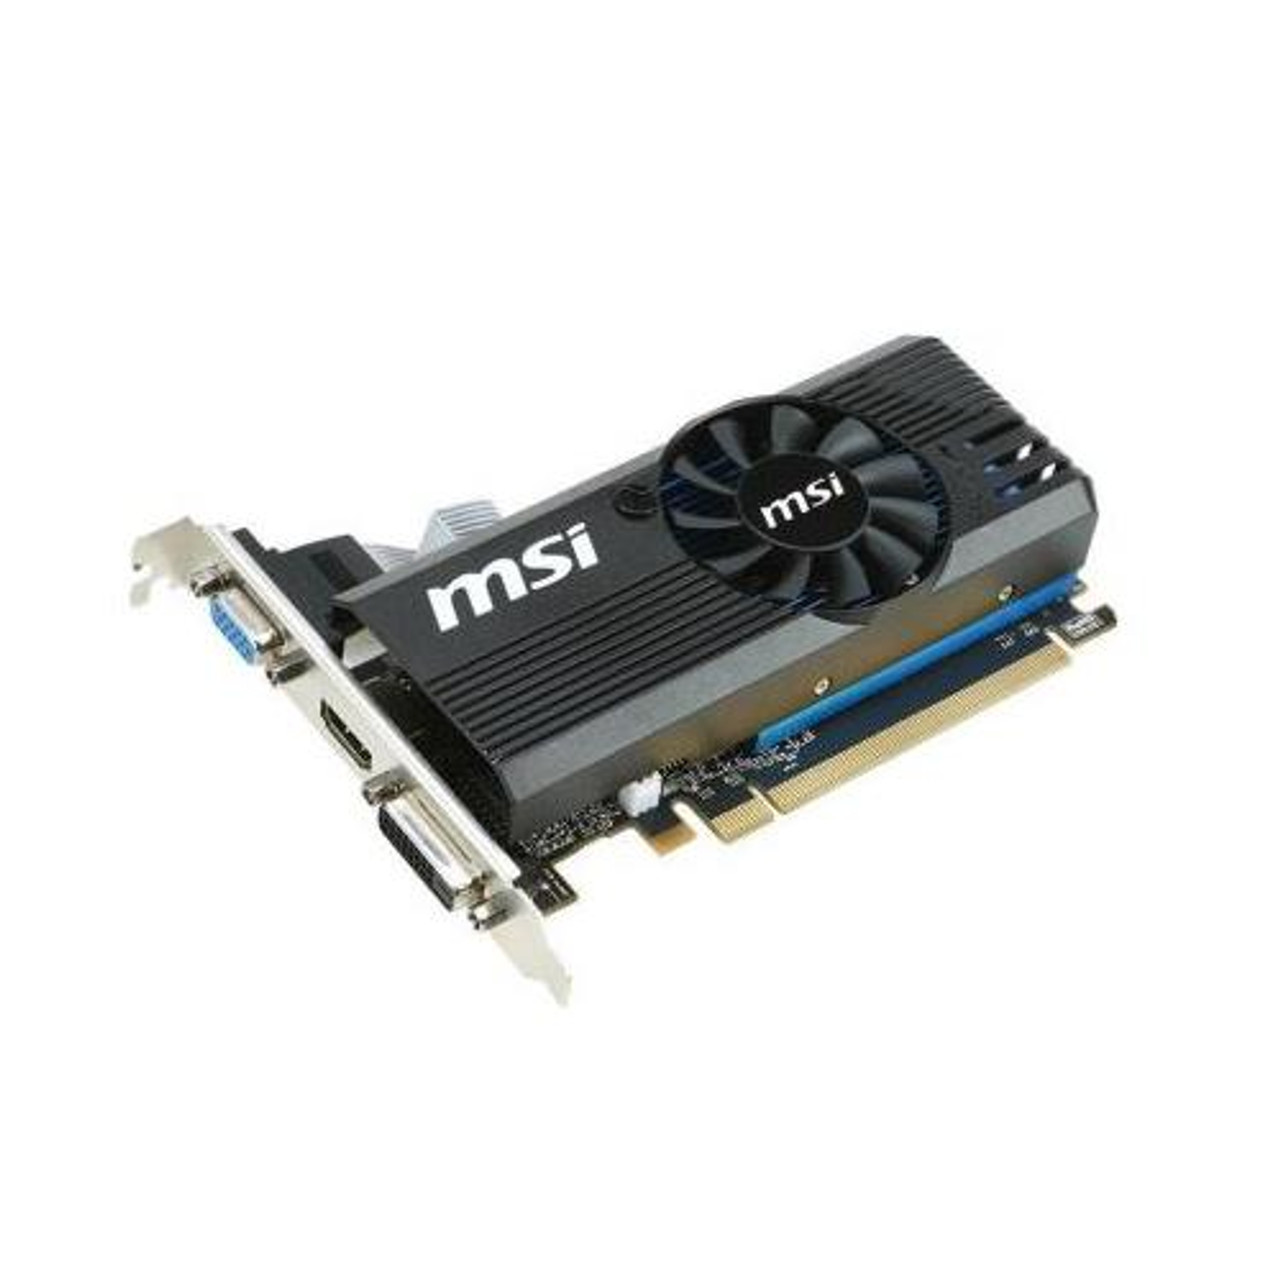 MSI-730G25 MSI NVidia GeForce GT 730 